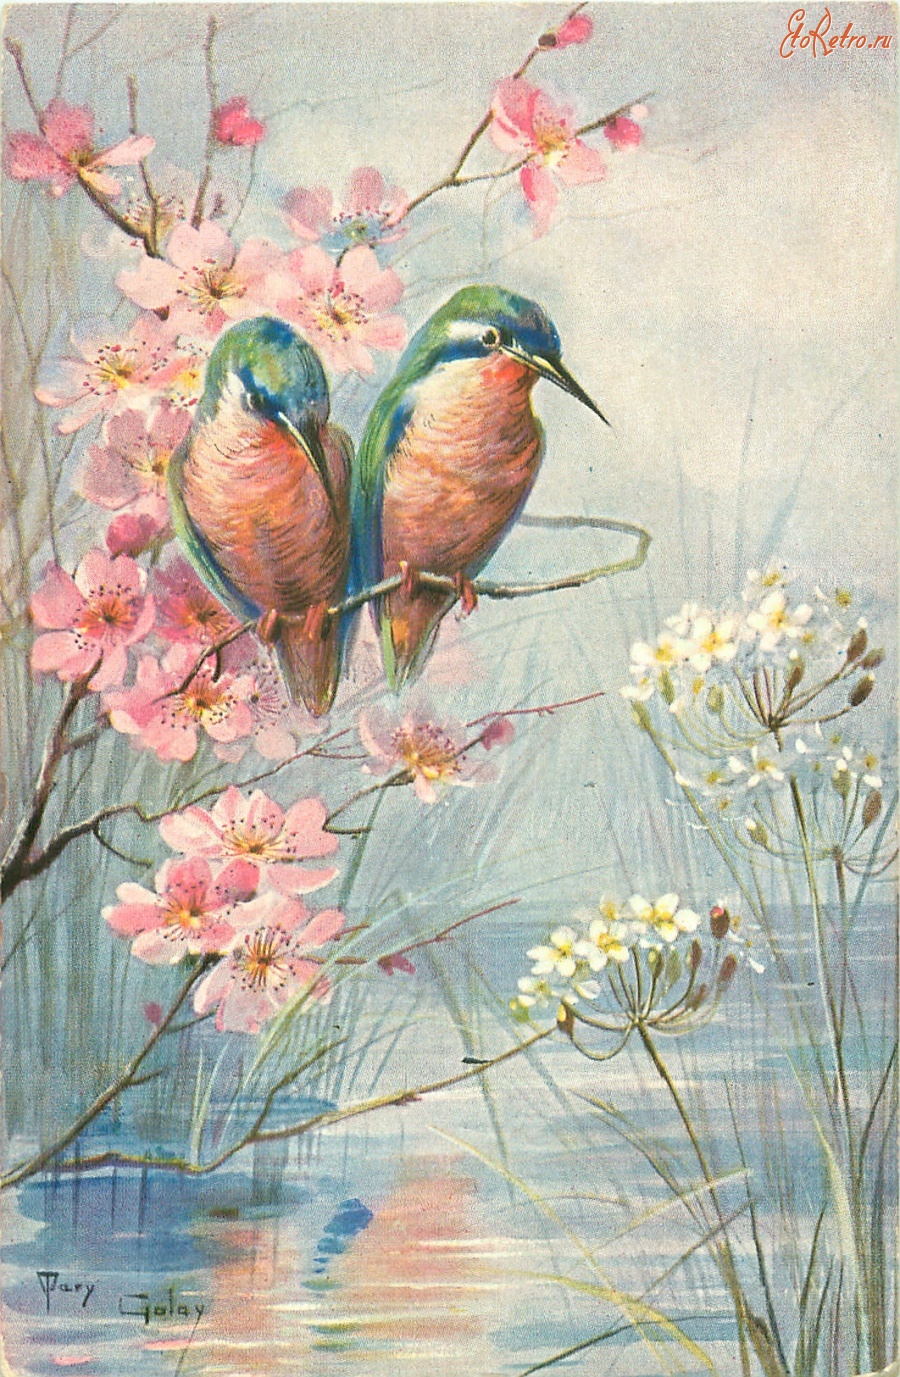 Ретро открытки - Зимородки на цветущей ветке над прудом с белыми цветами камыша